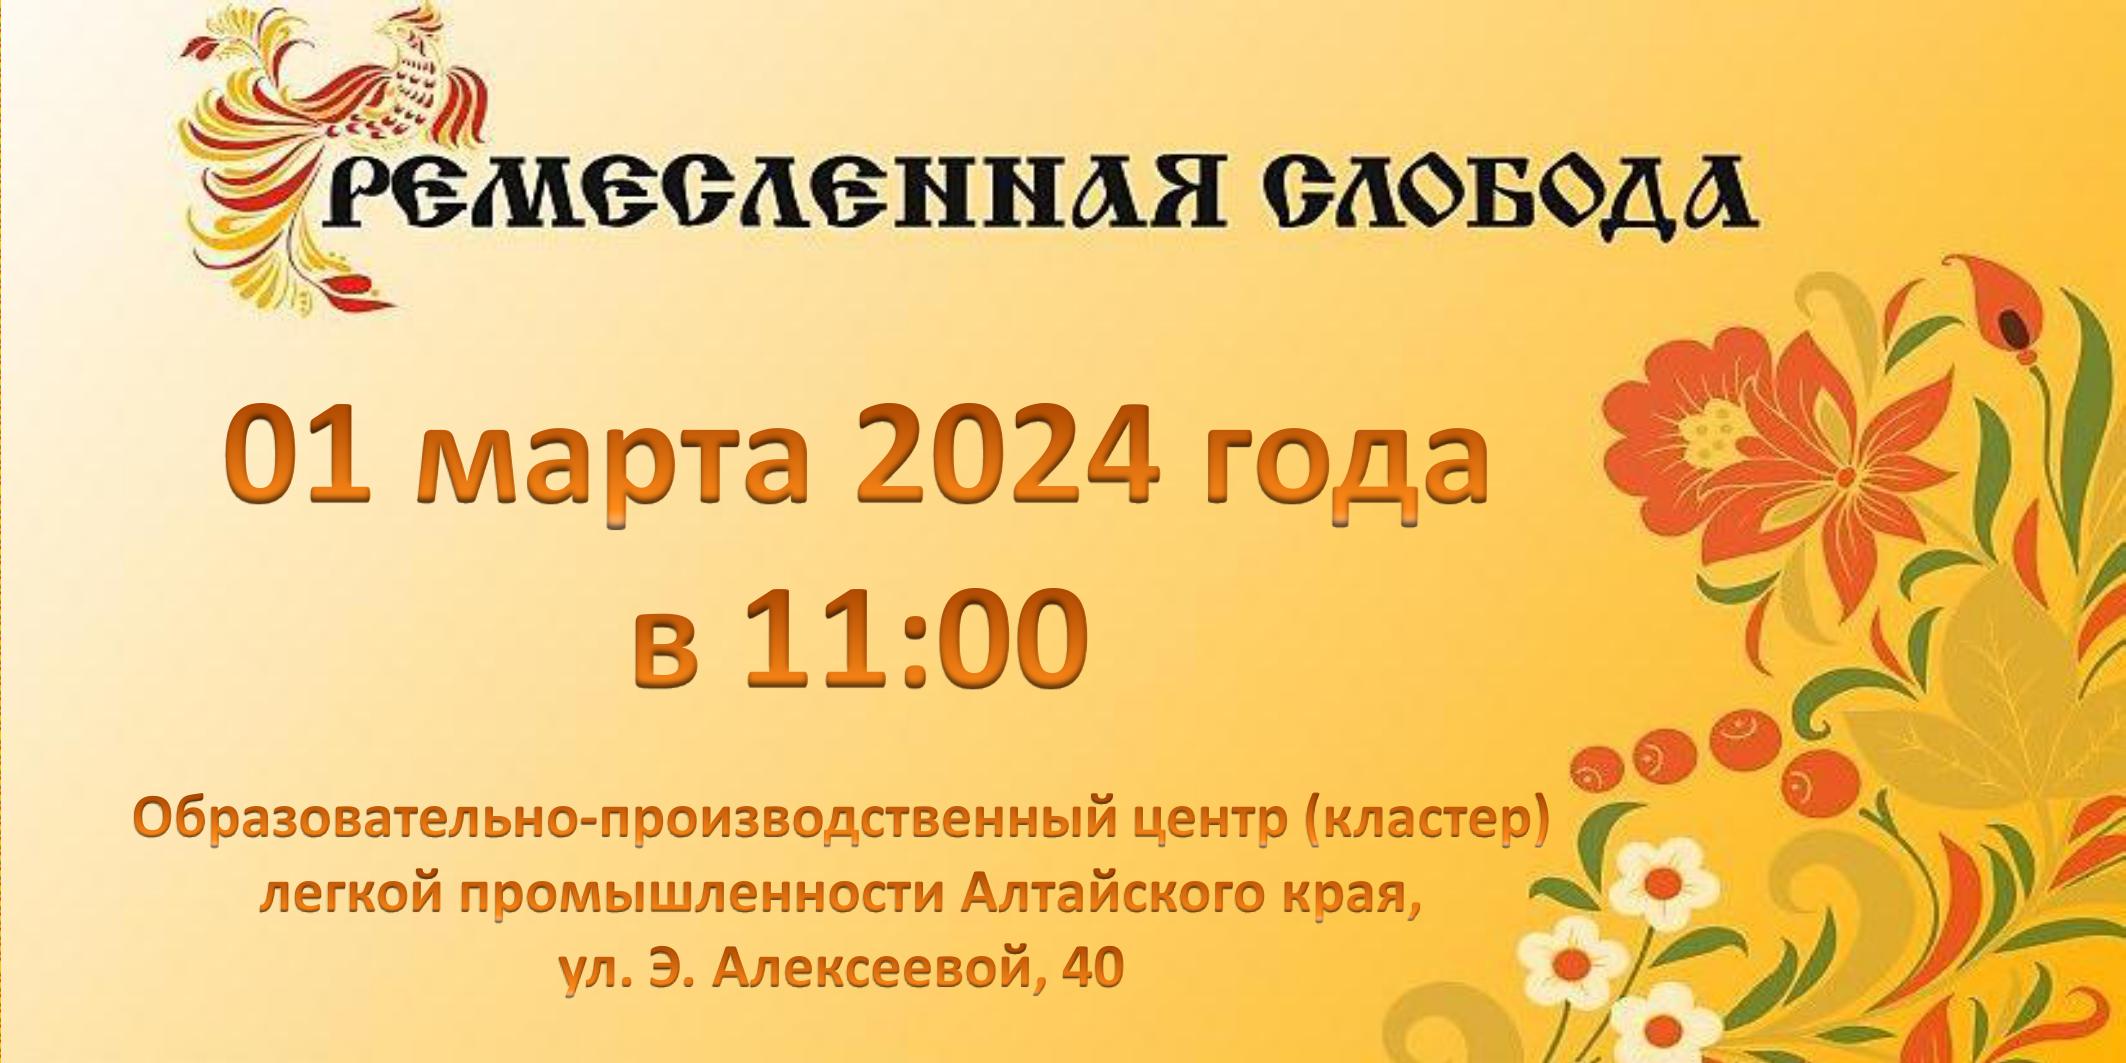 Алтайская академия гостеприимства 01 марта 2024 года.